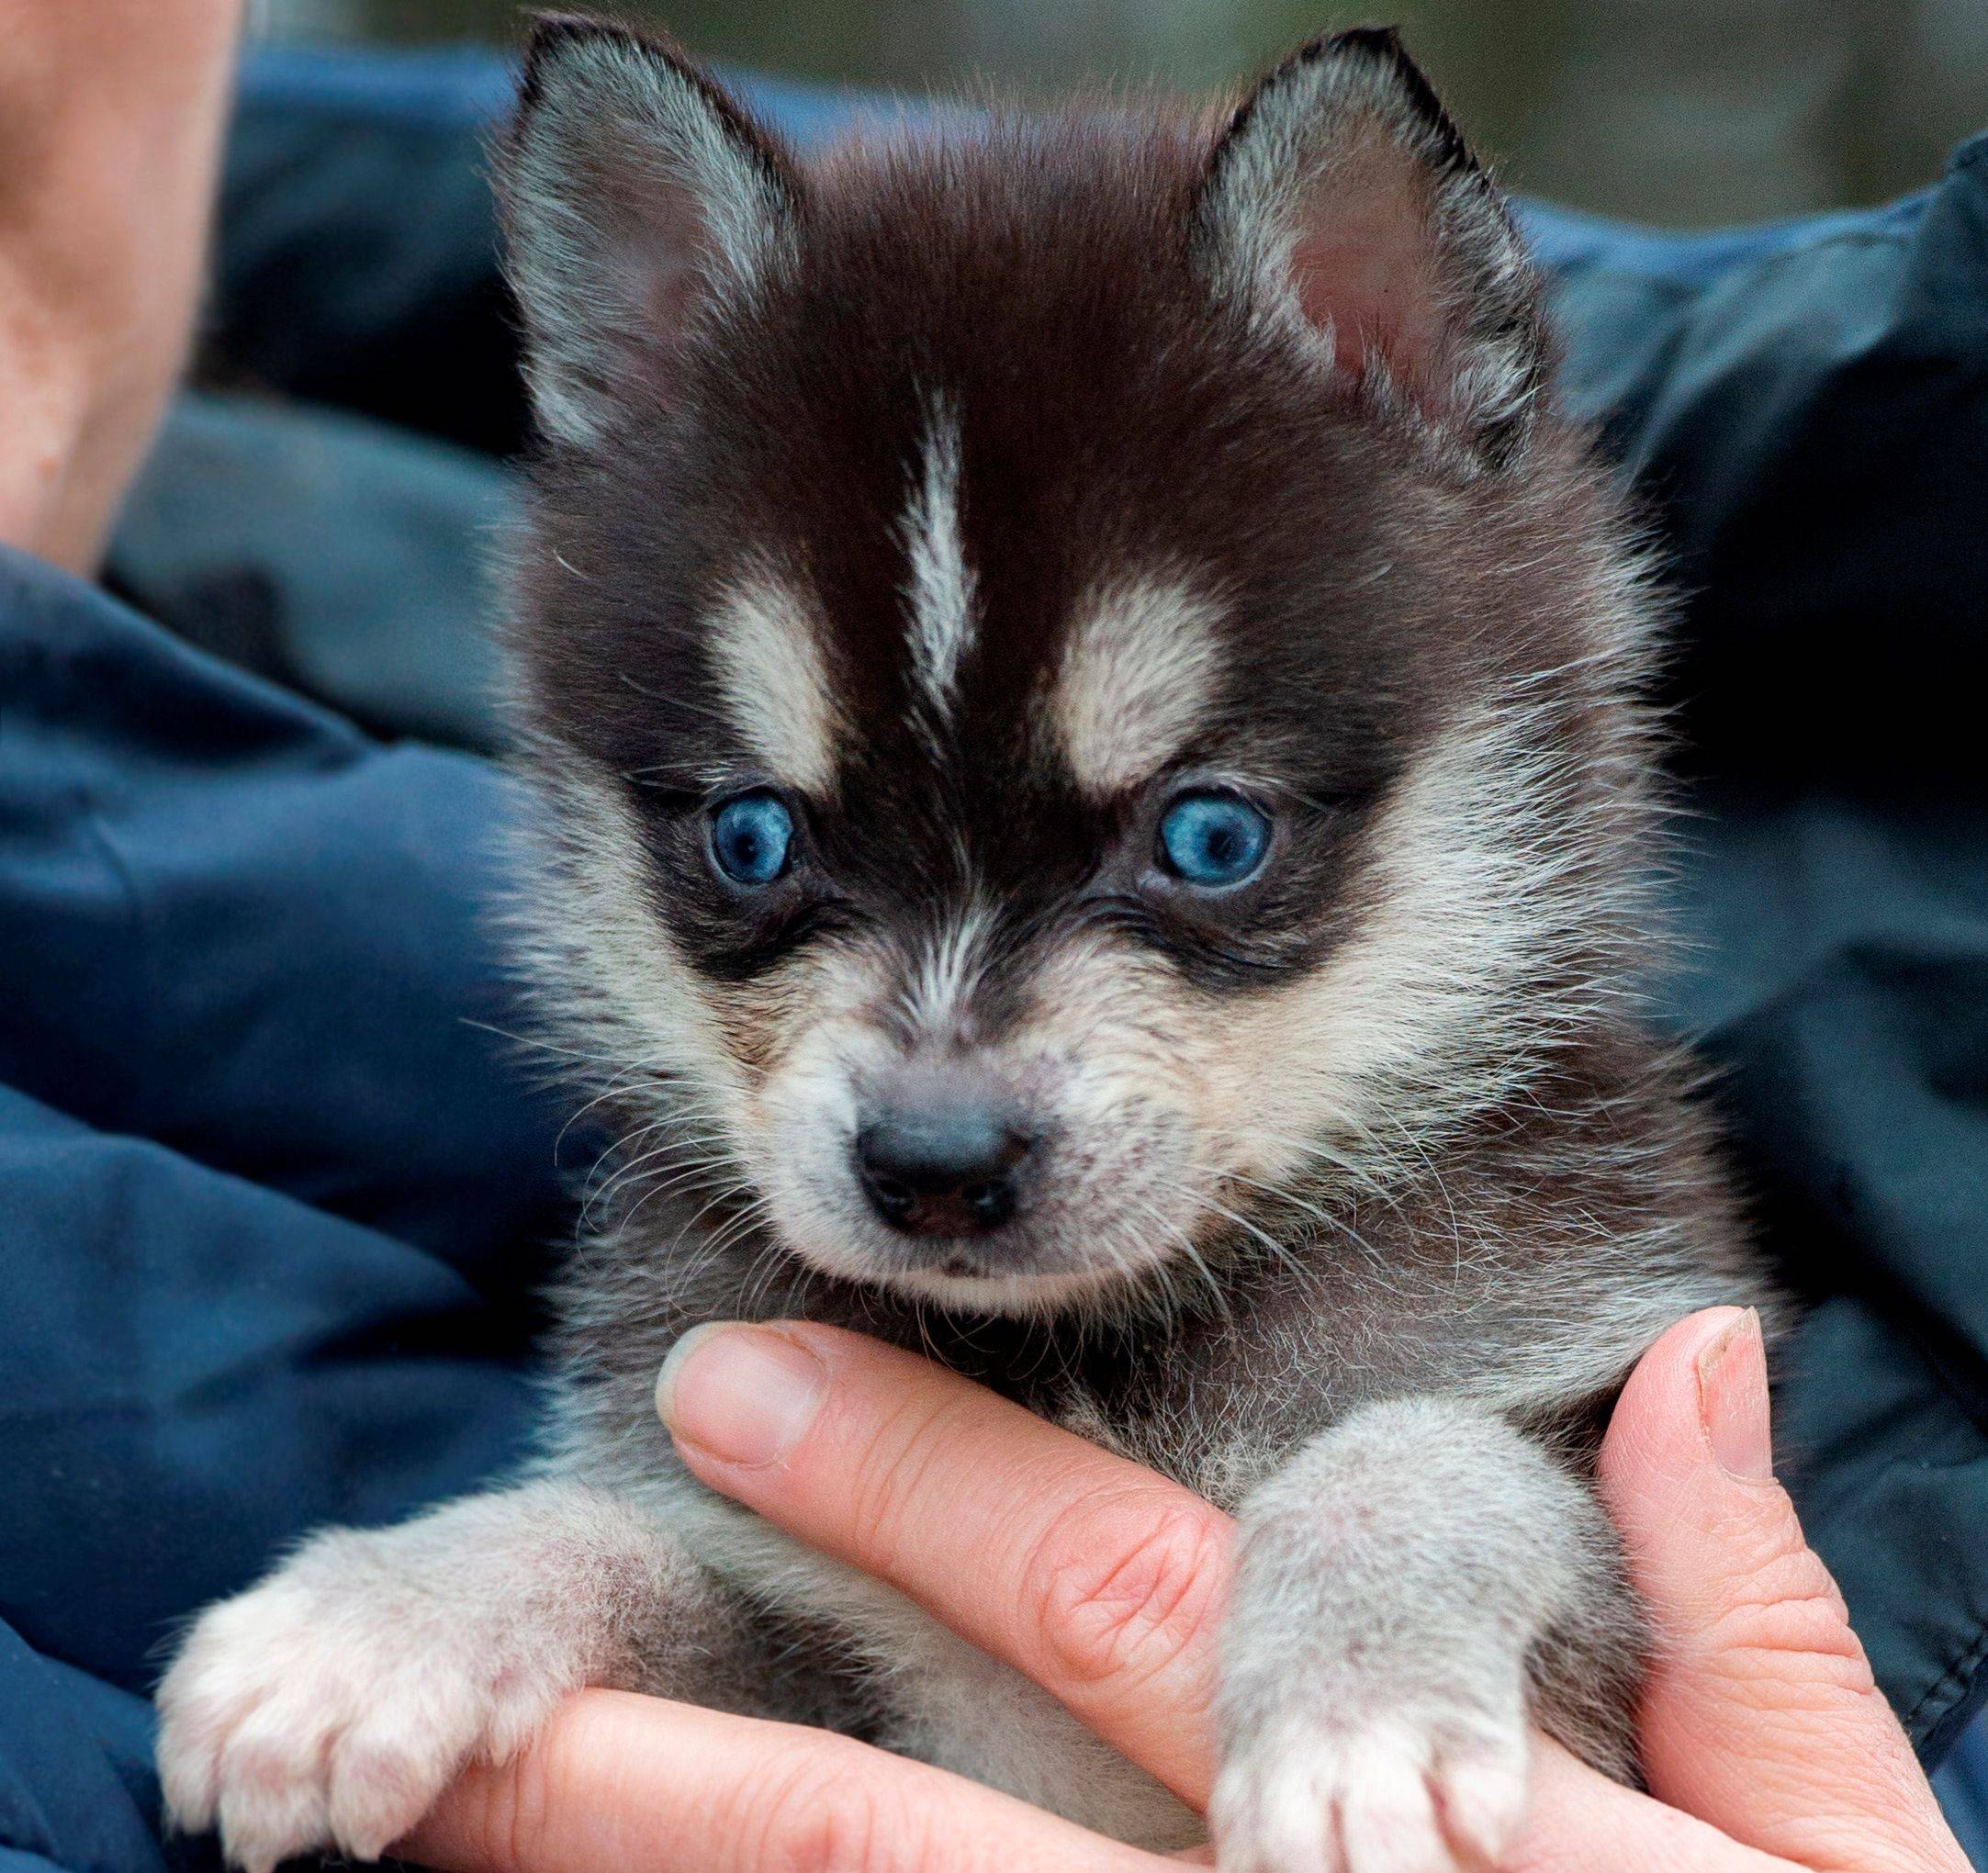 Аляскинский кли кай (мини хаски): описание породы собак